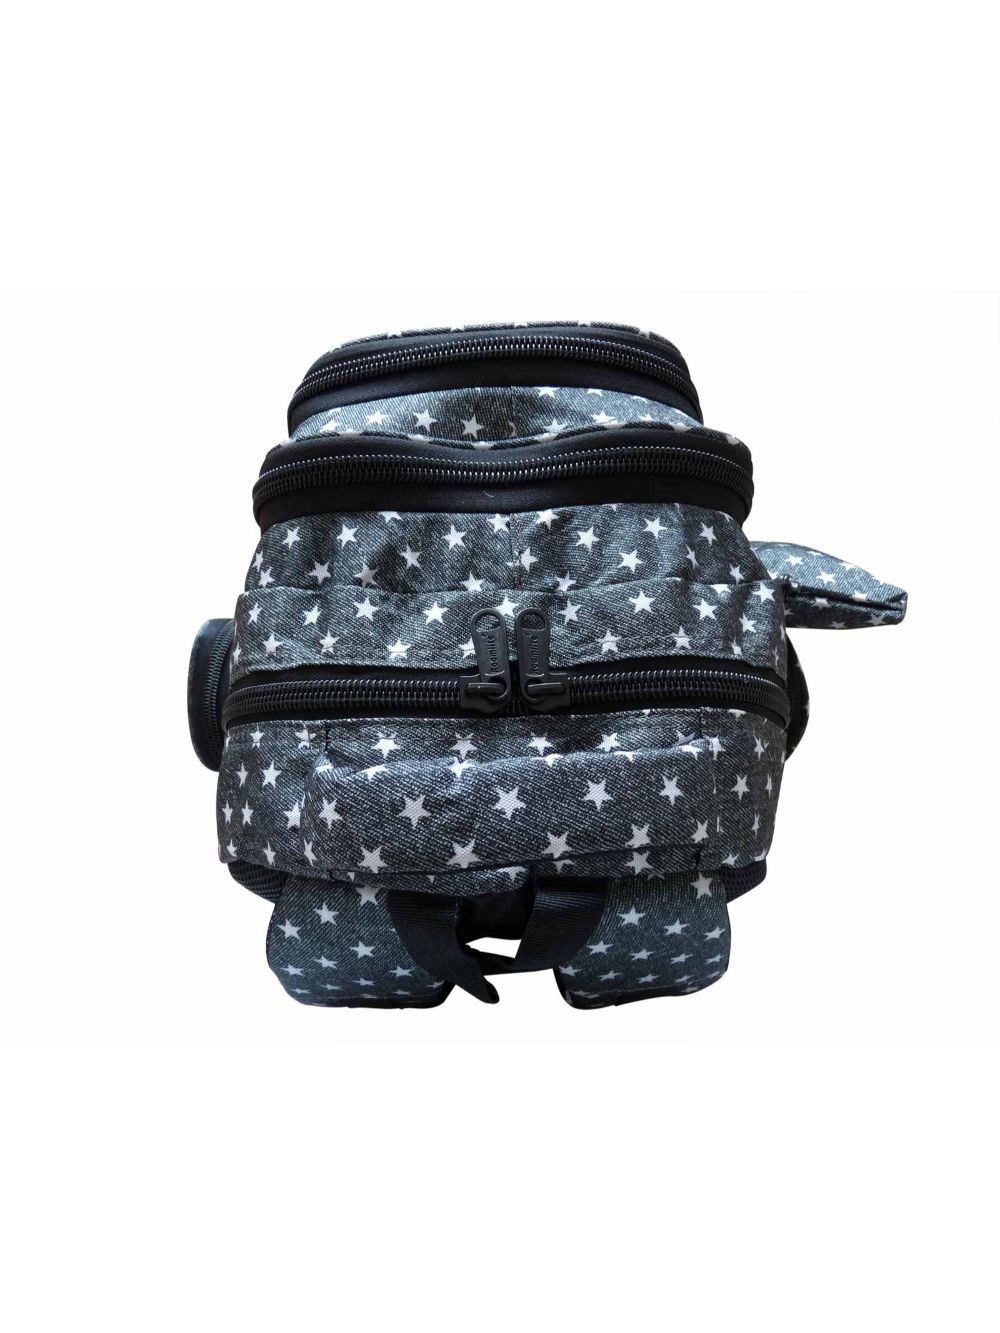 Roamlite Childrens Backpack Black Star pattern RL840  top